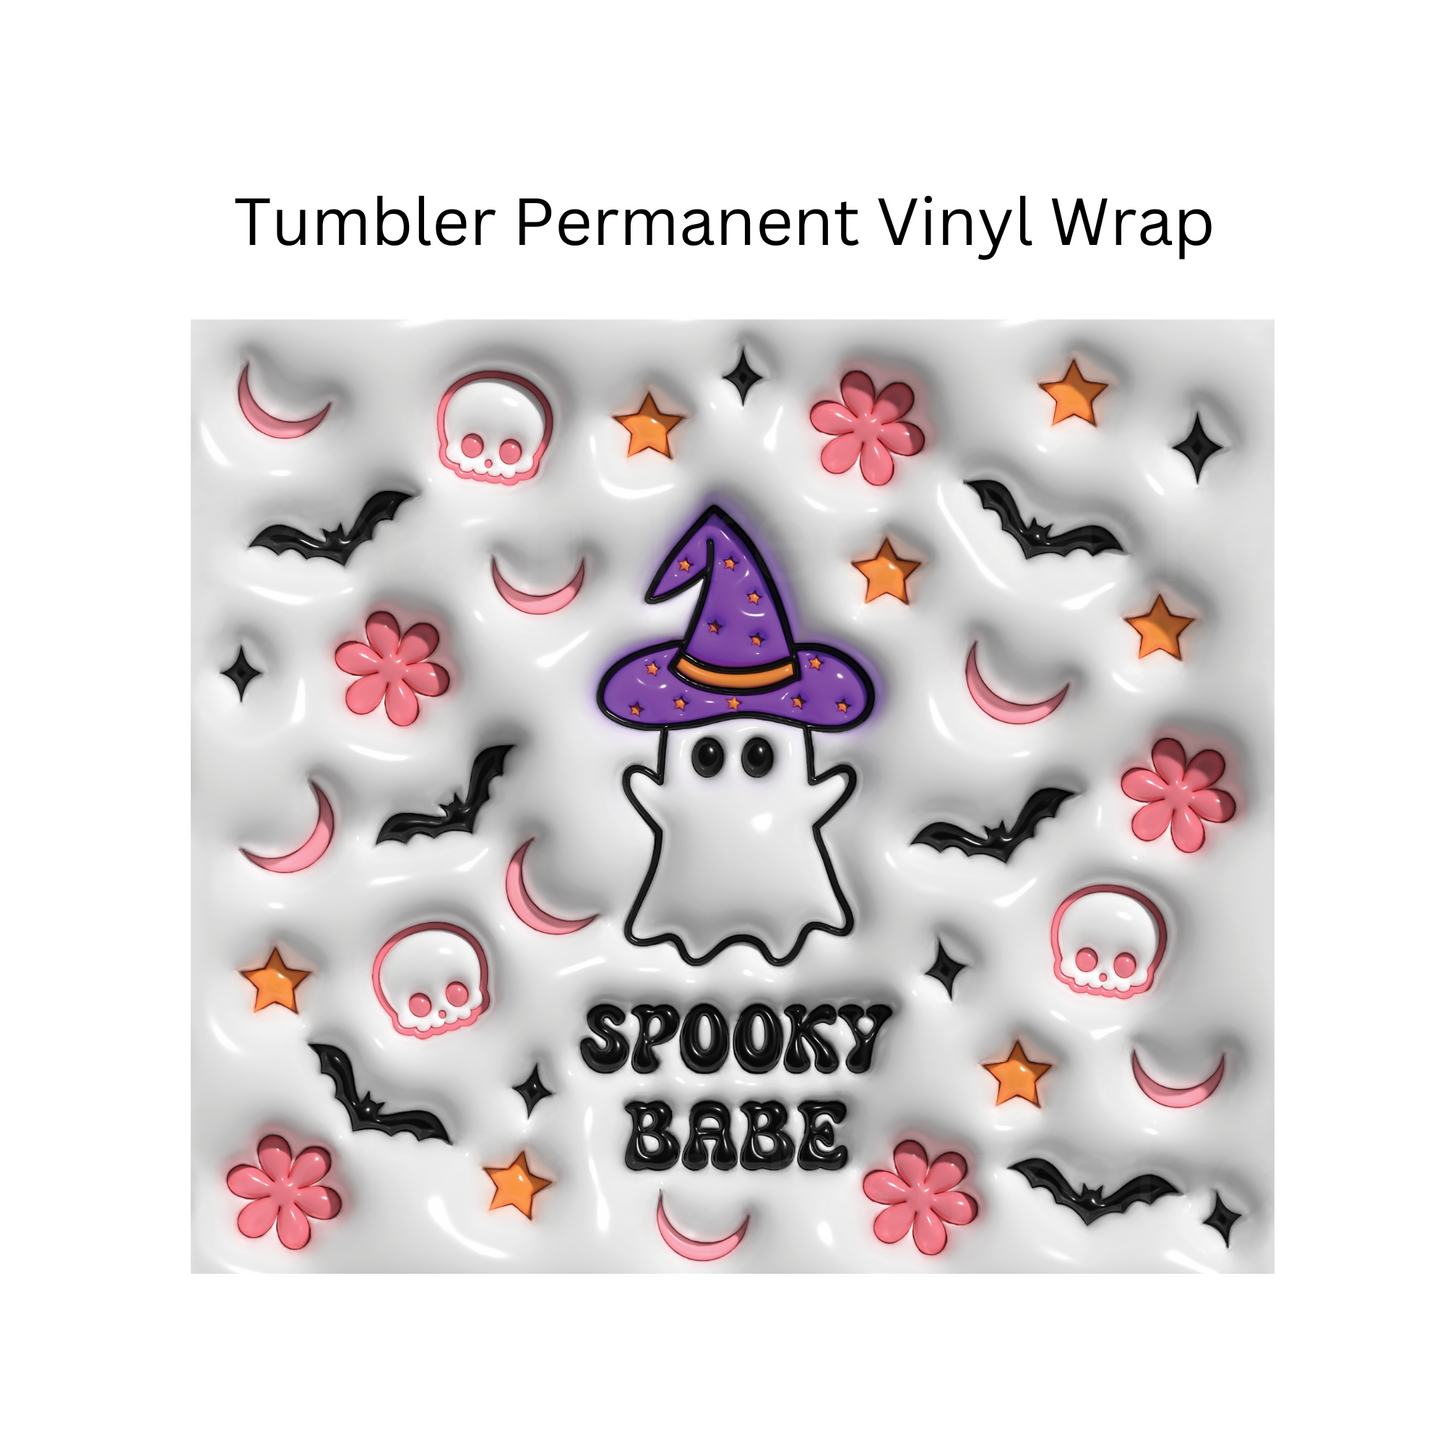 Spooky Babe Permanent Vinyl Wrap